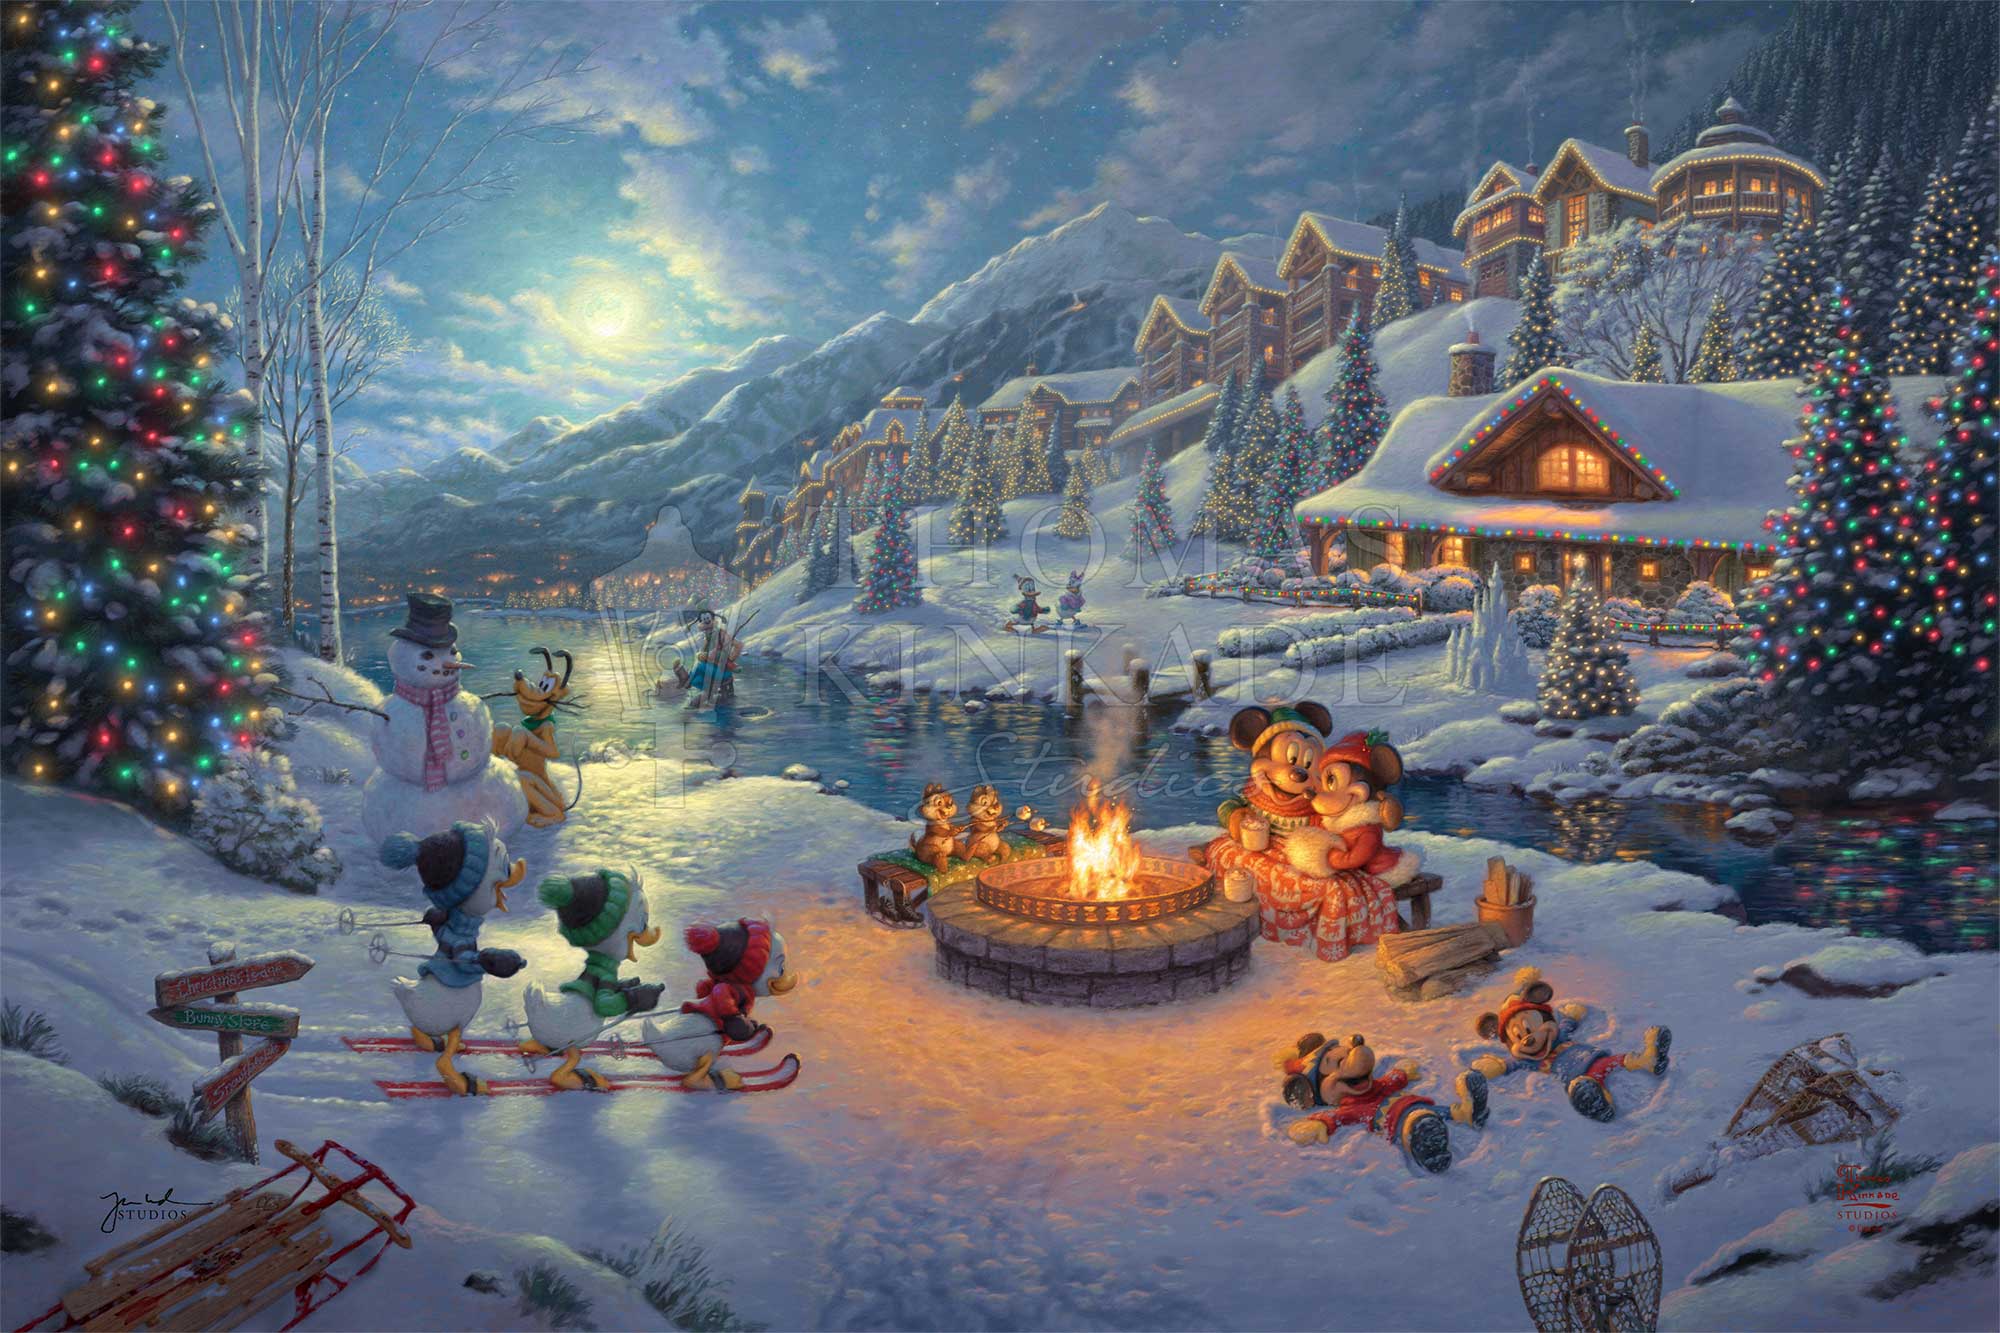 Disney christmas, disney, merry christmas, miki mouse, snowflake, winter,  xmas, HD wallpaper